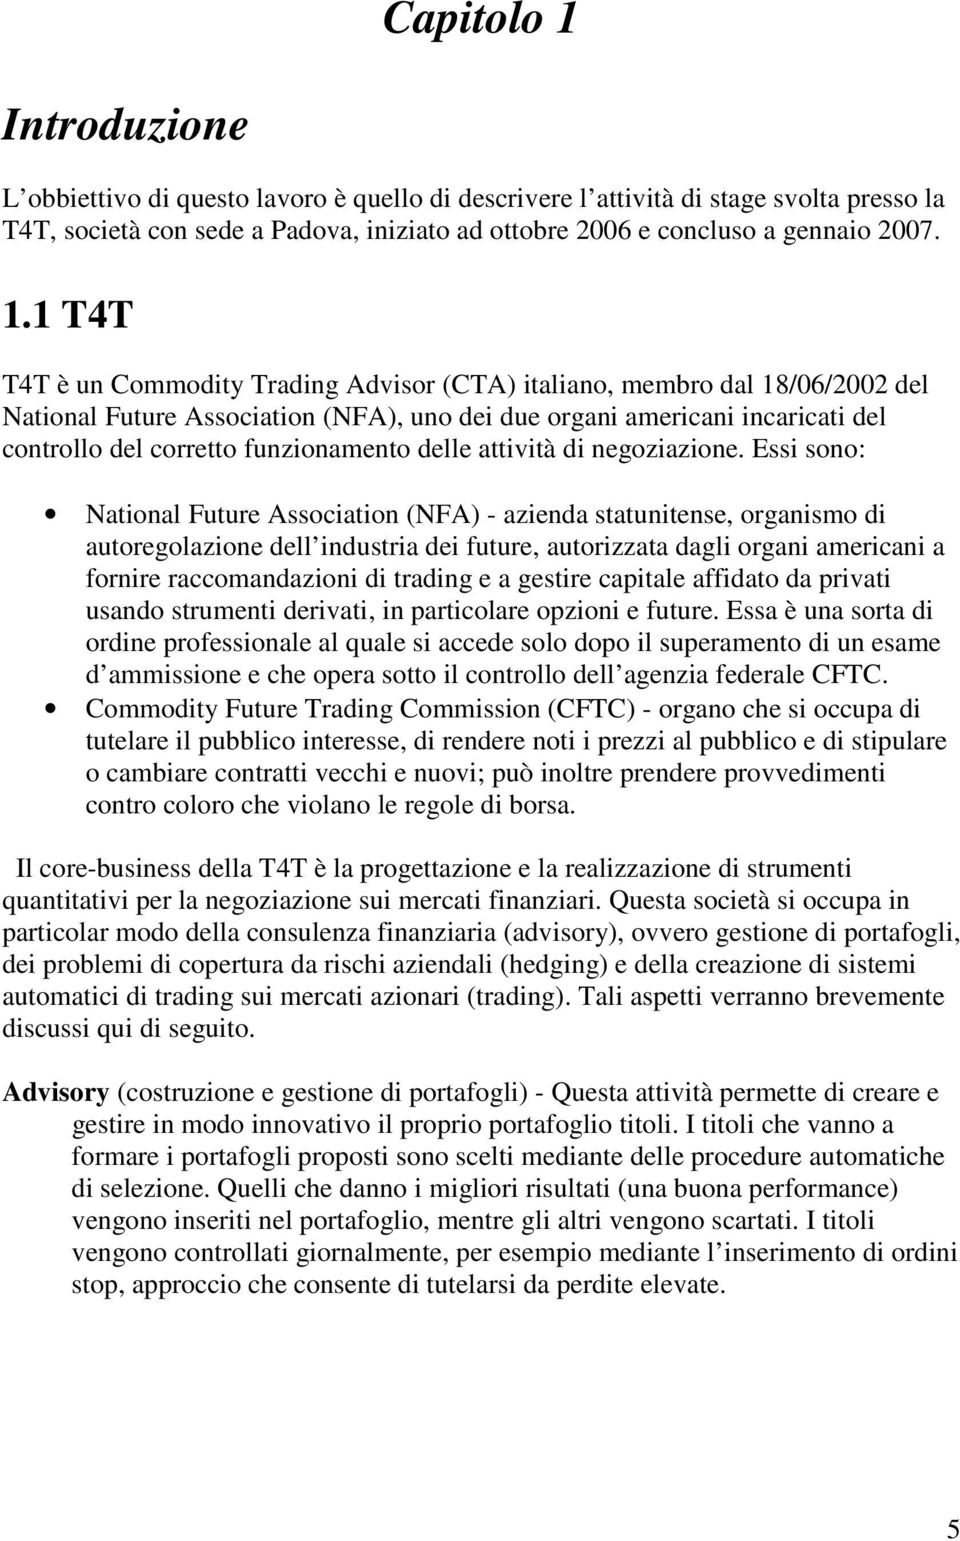 1 T4T T4T è un Commodity Trading Advisor (CTA) italiano, membro dal 18/06/2002 del National Future Association (NFA), uno dei due organi americani incaricati del controllo del corretto funzionamento